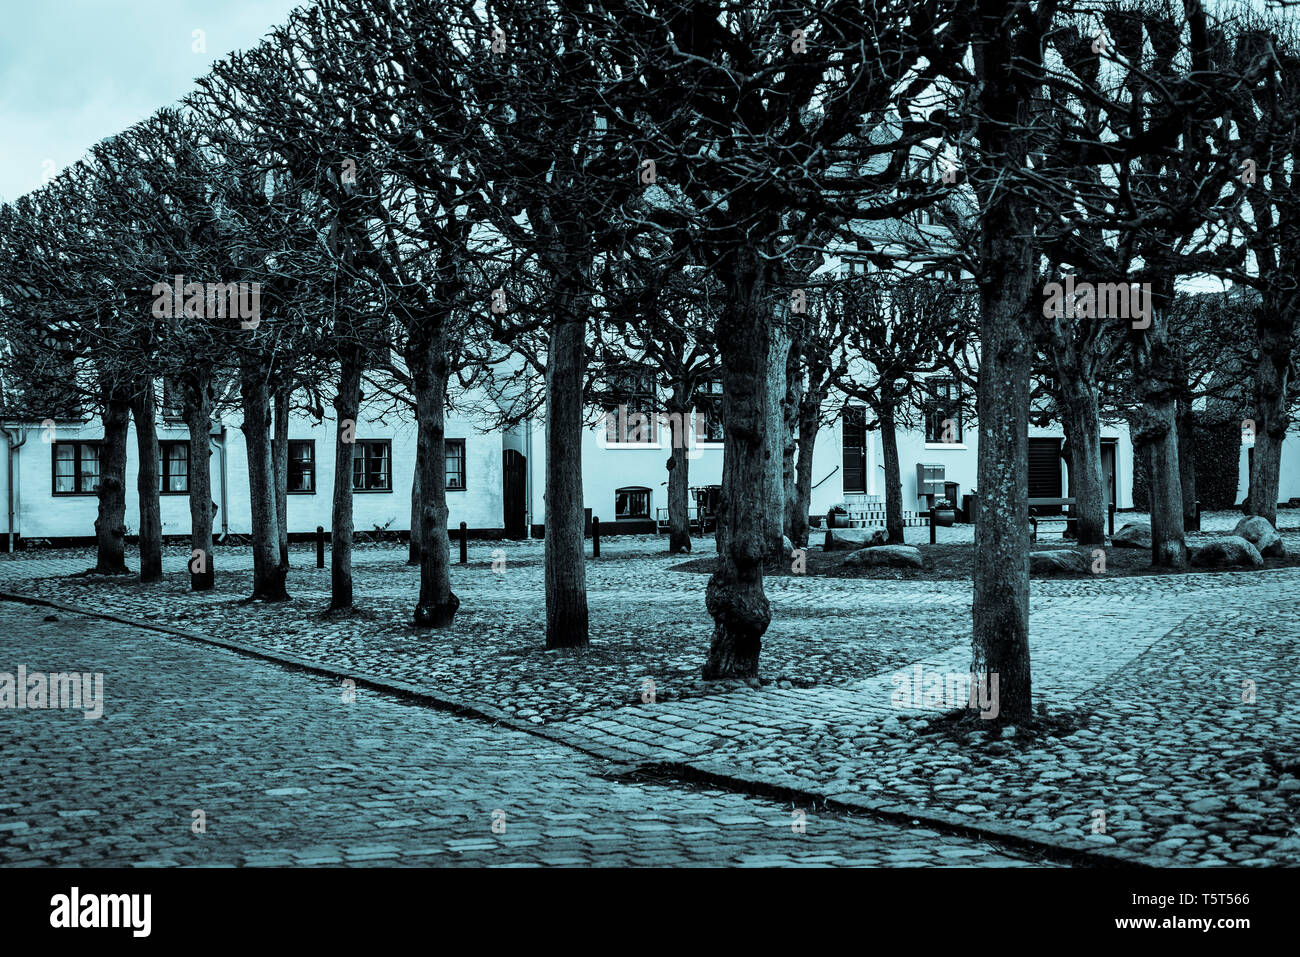 Malerische altmodische Platz mit Linie der Bäume im gut erhaltenen Dragor Dorf in der Nähe von Kopenhagen, Dänemark Stockfoto